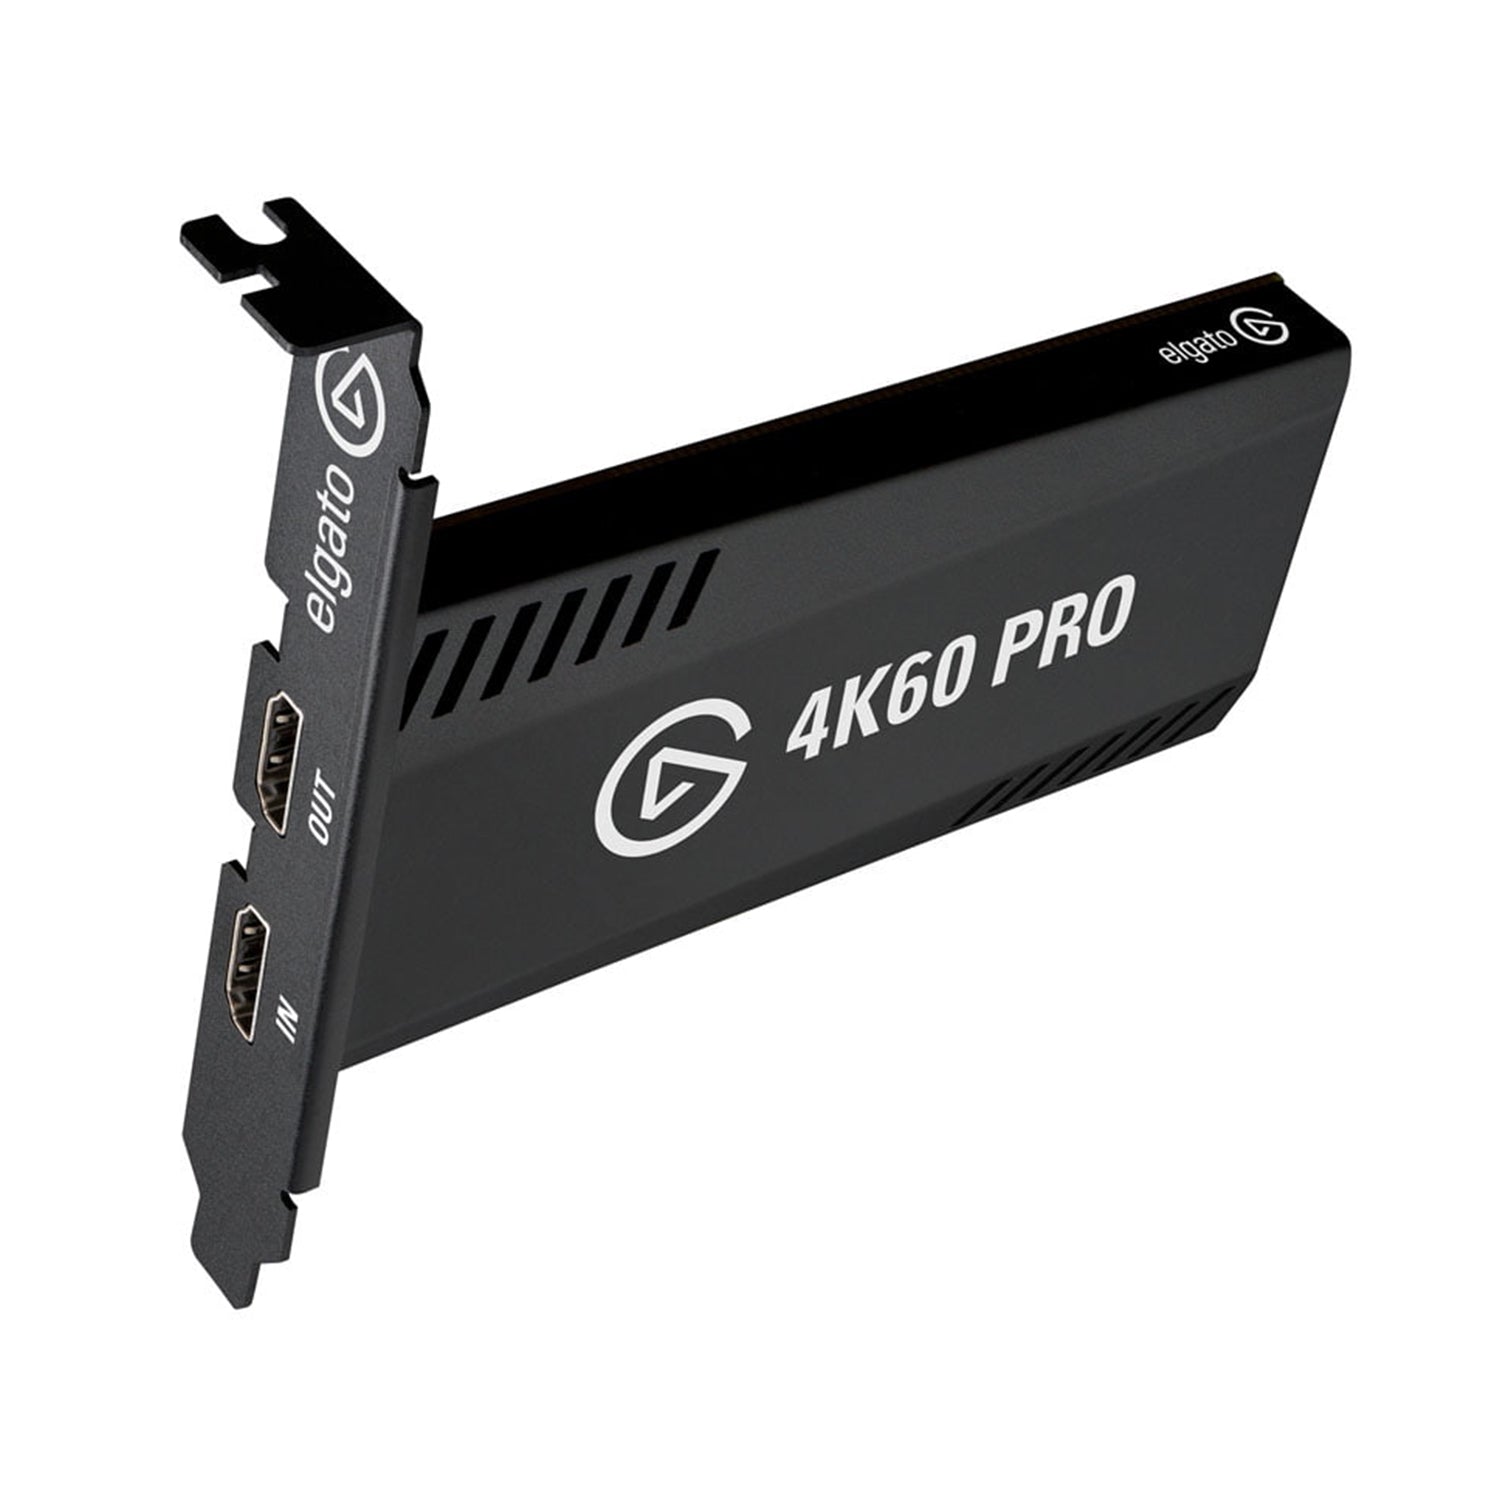 Carte d'acquisition Elgato 4K60 Pro MK.2